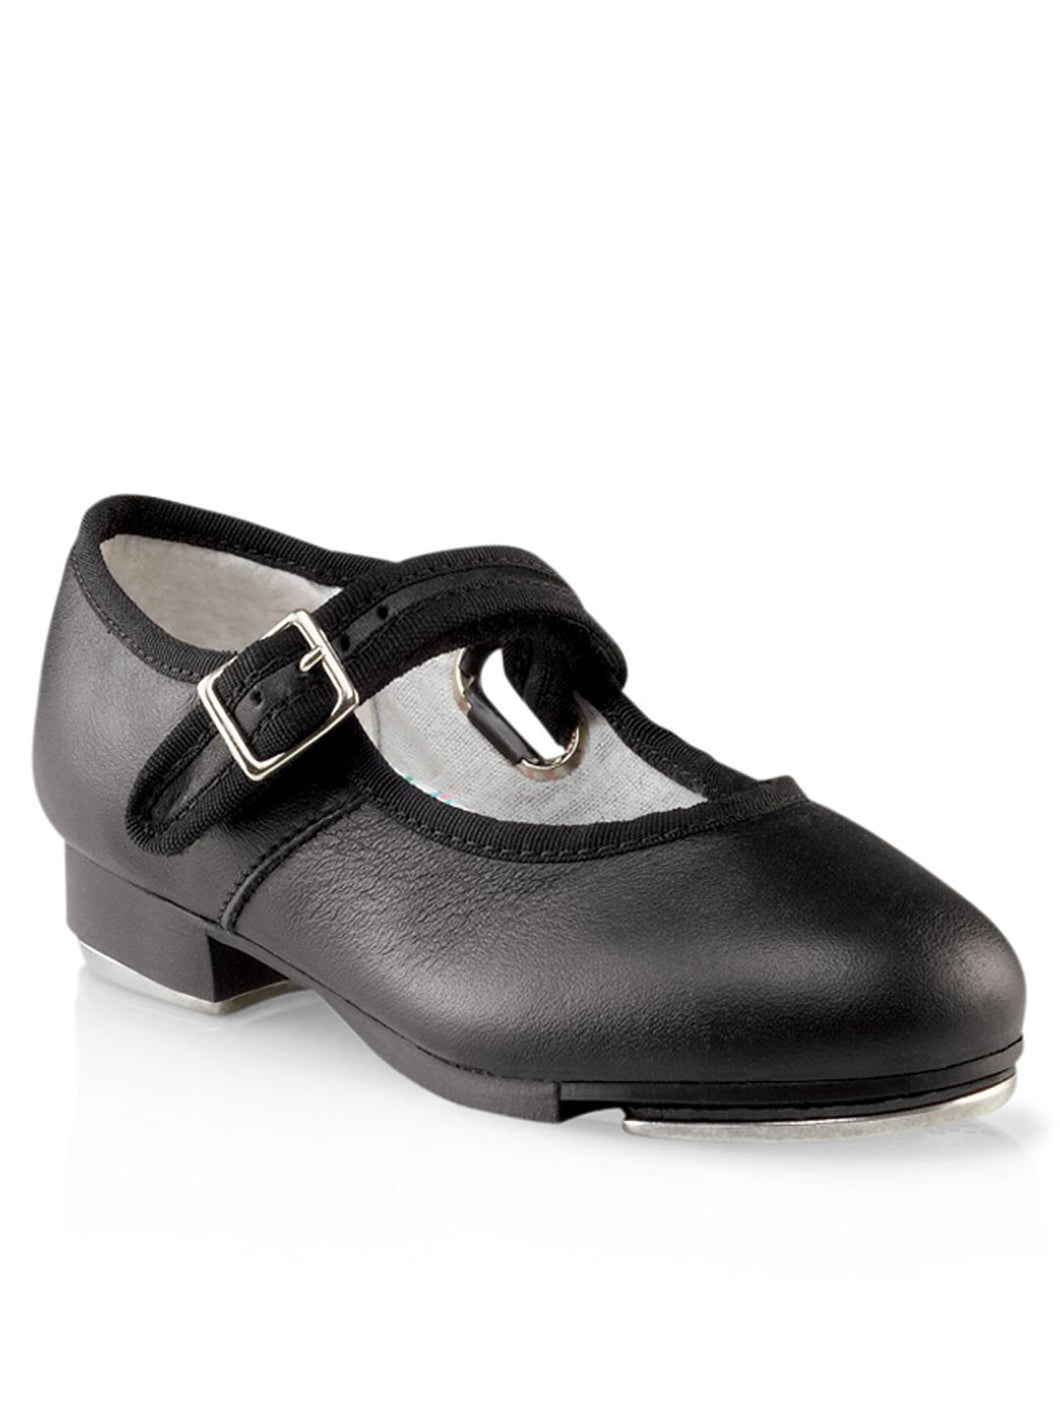 Capezio Mary Jane Buckle Tap Shoes - Black #3800